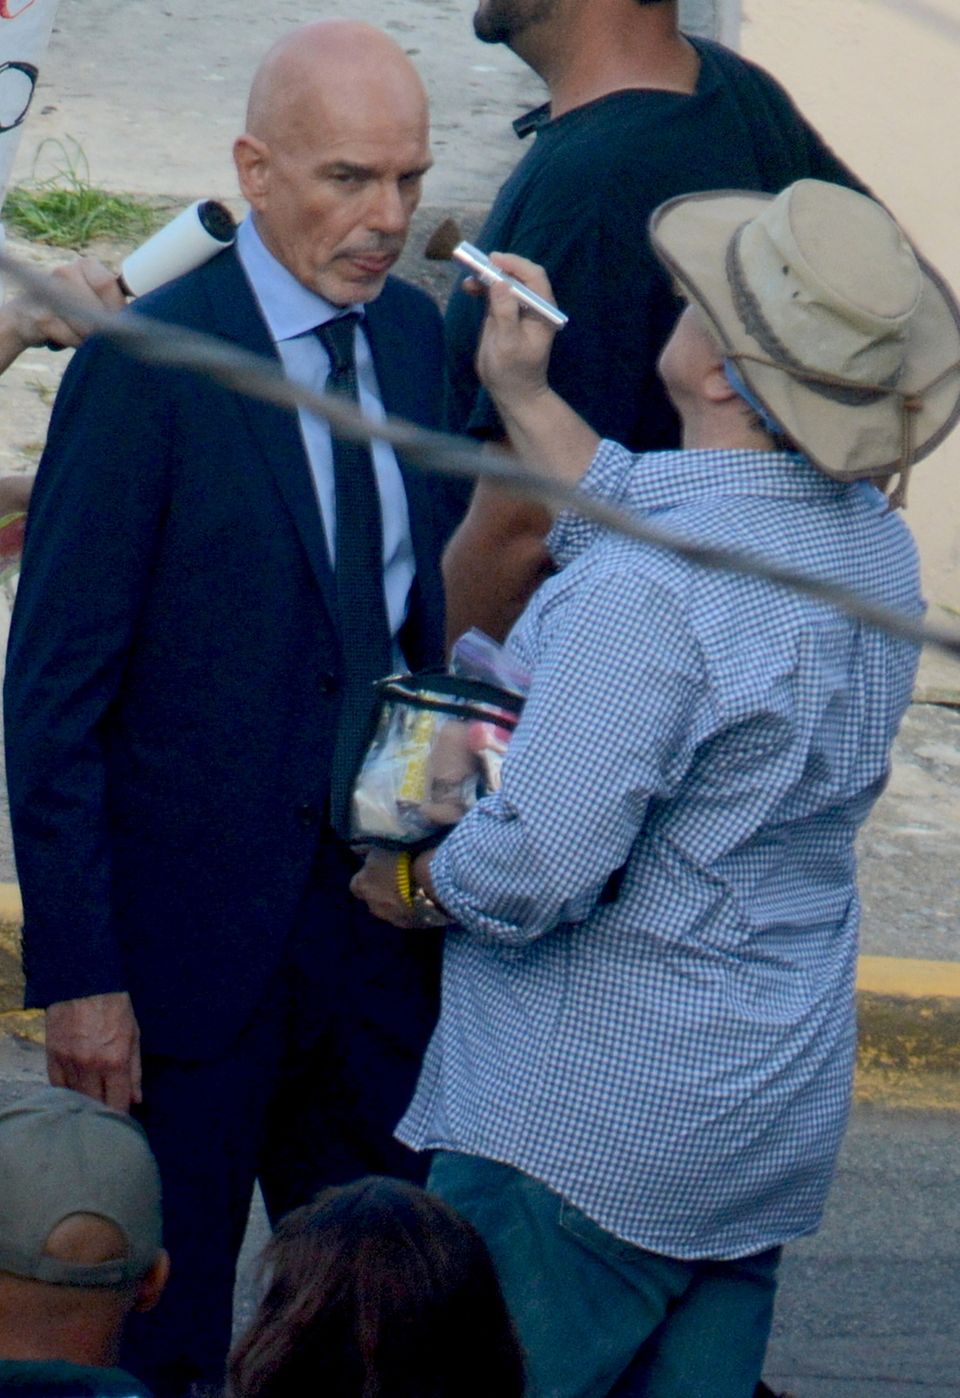 12. November 2014: Billy Bob Thornton dreht mit Glatze eine Szene mit Sandra Bullock. Er spielt in George Clooneys neuem Film "Our Brand is Crisis" mit, die Dreharbeiten finden in Puerto Rico statt.